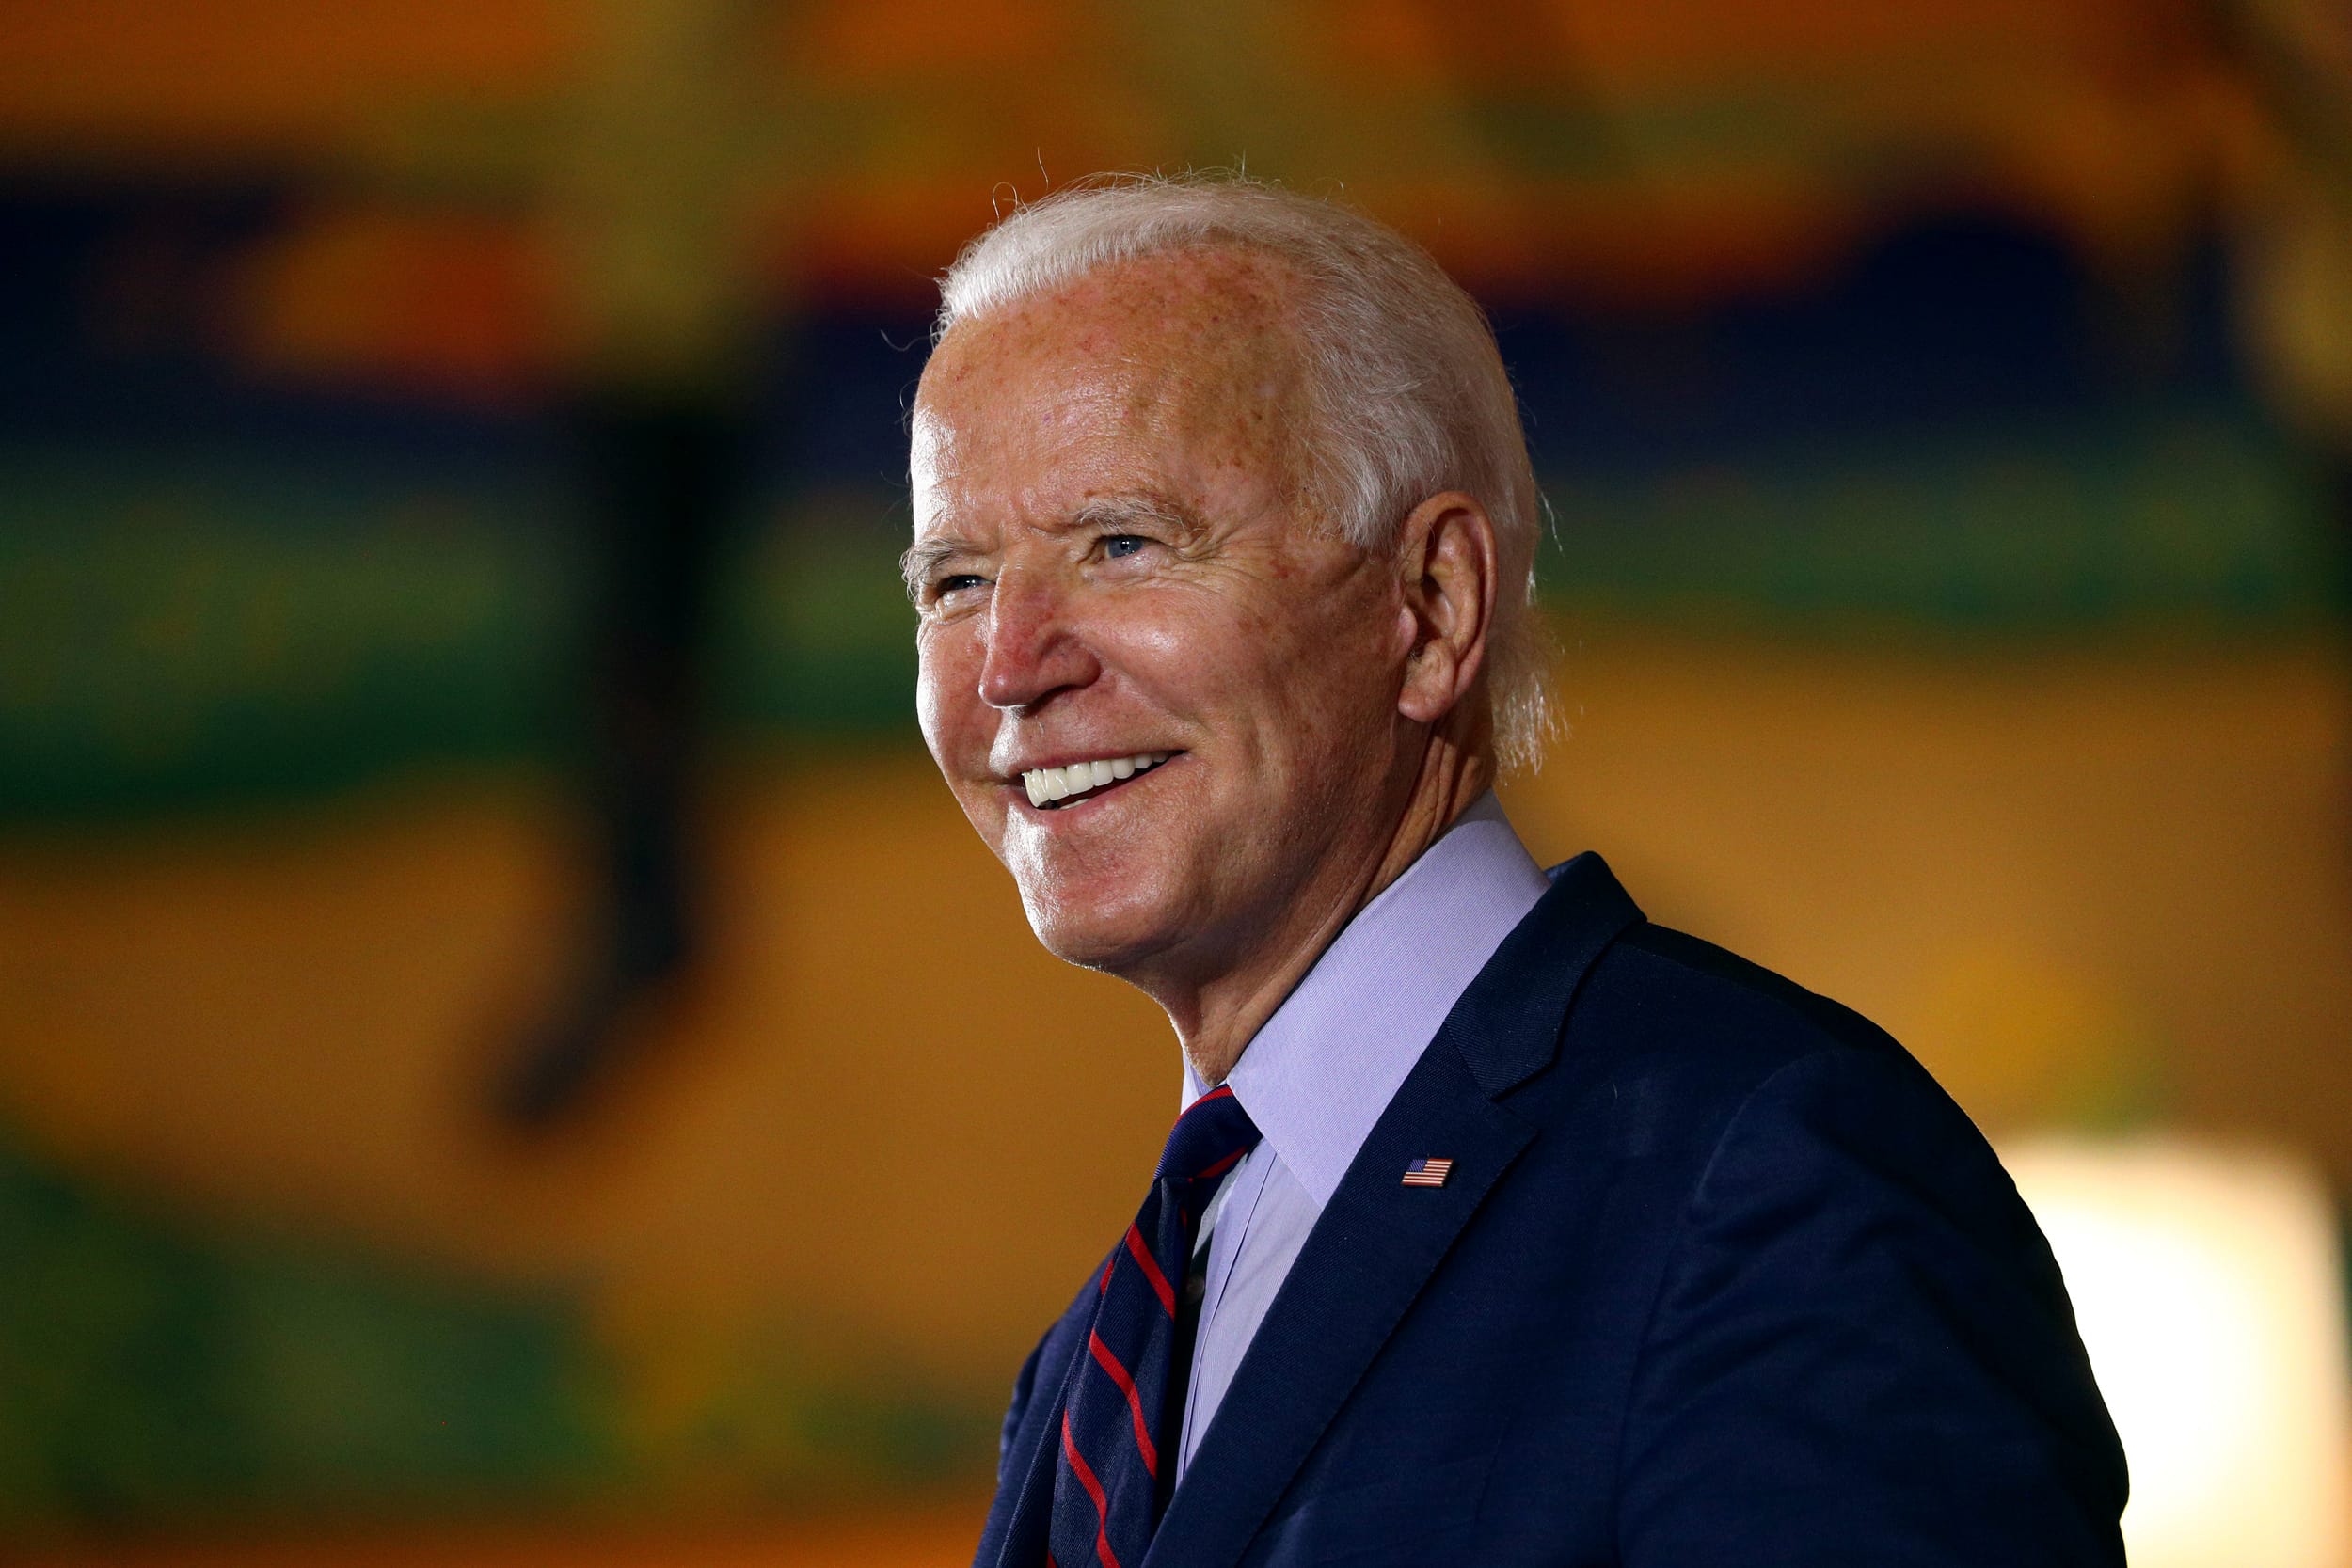 Image: Democratic presidential candidate Joe Biden attends a Voter Mobilization Event in Cincinnati